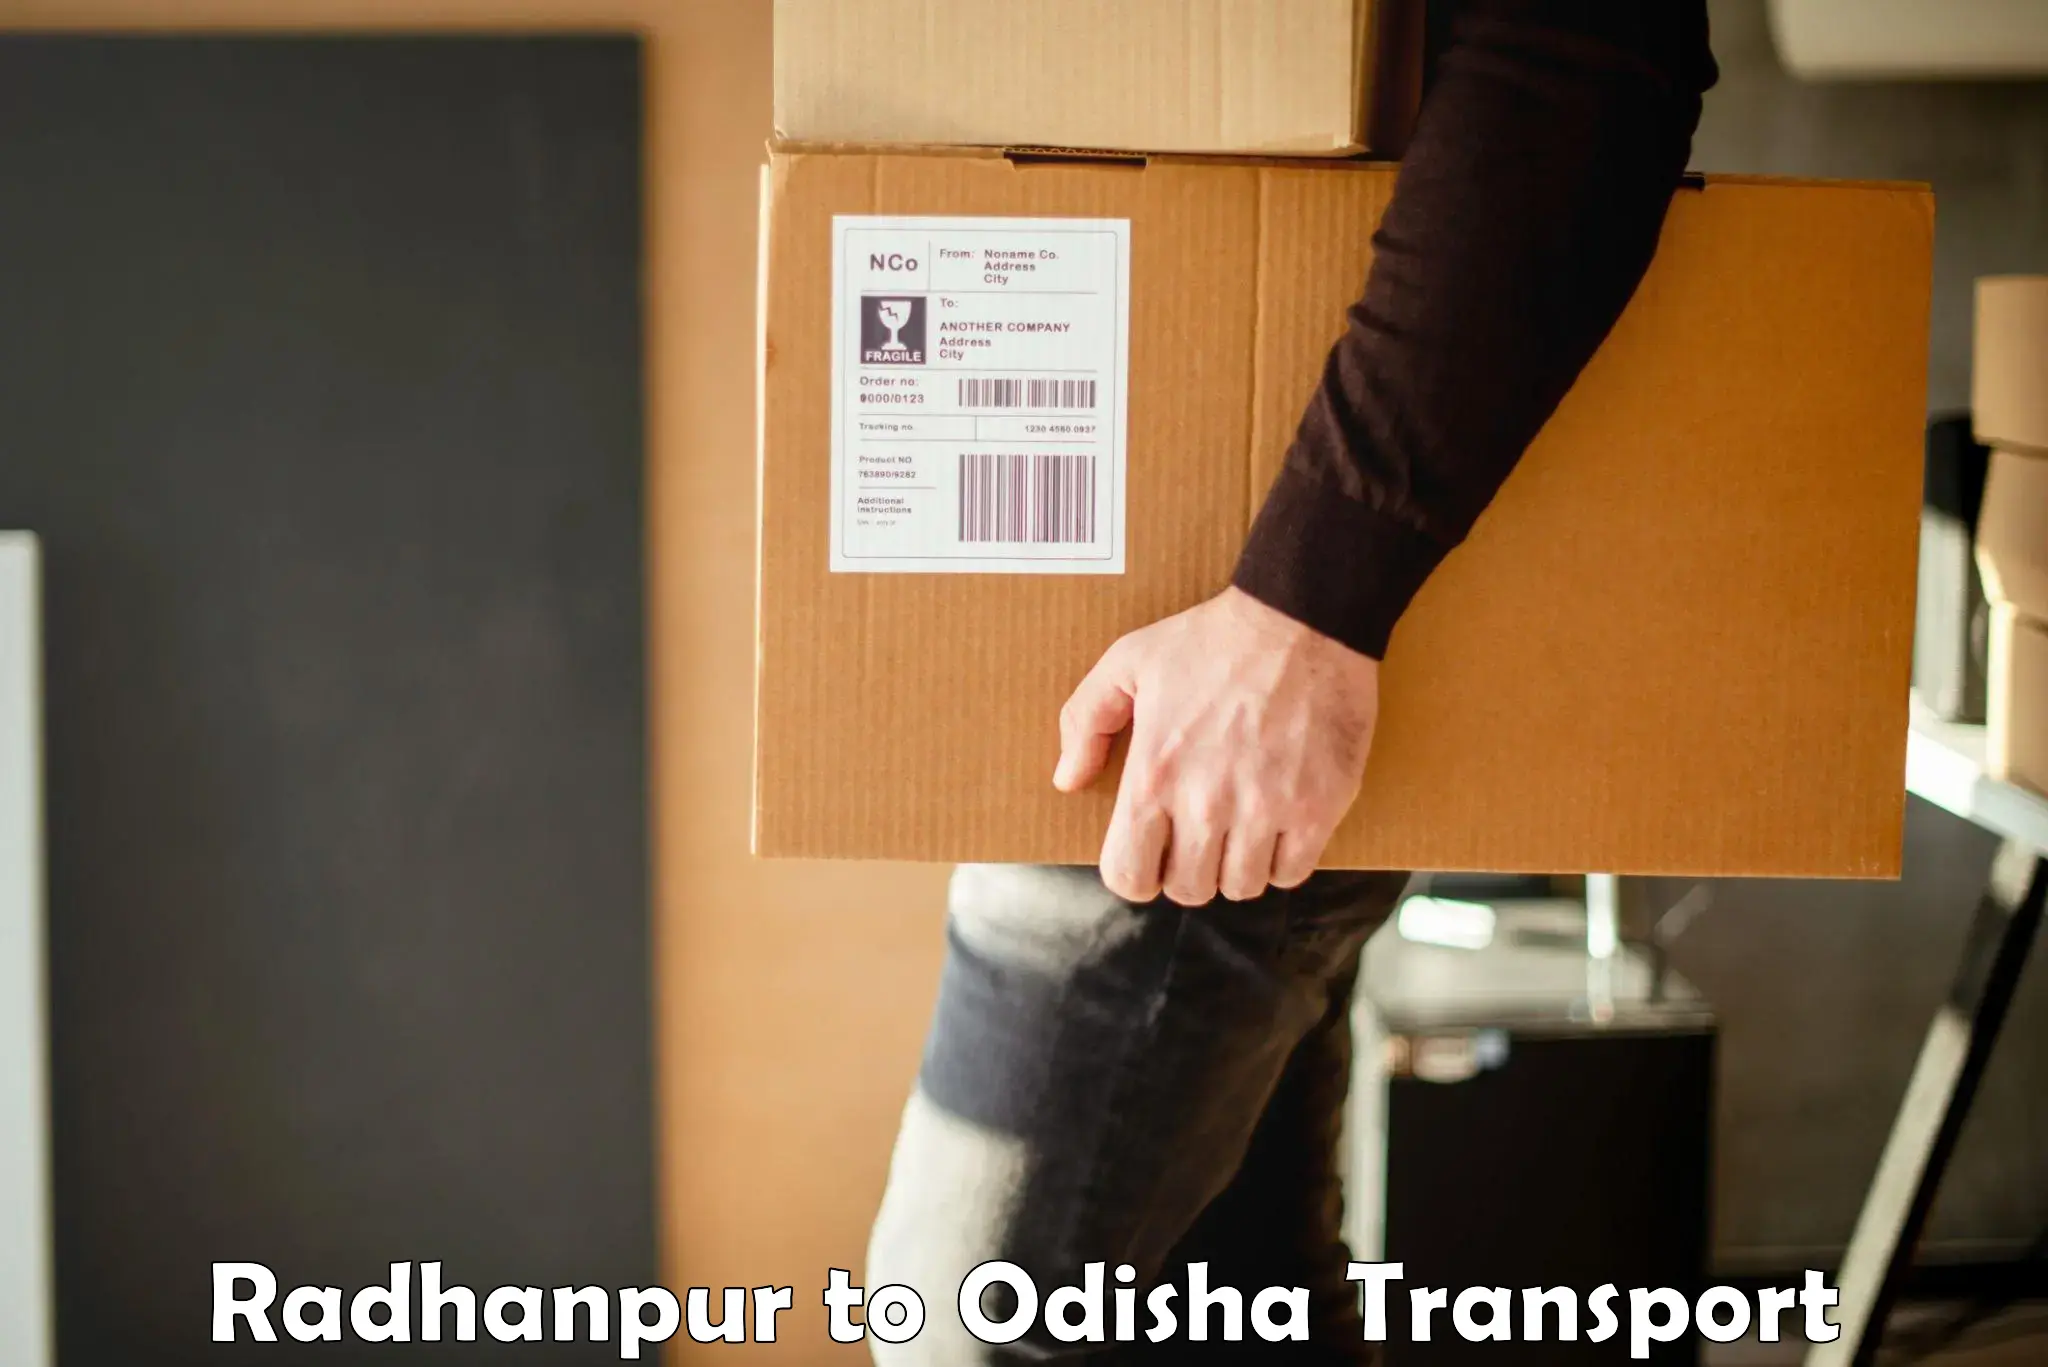 Transportation services Radhanpur to Bhubaneswar